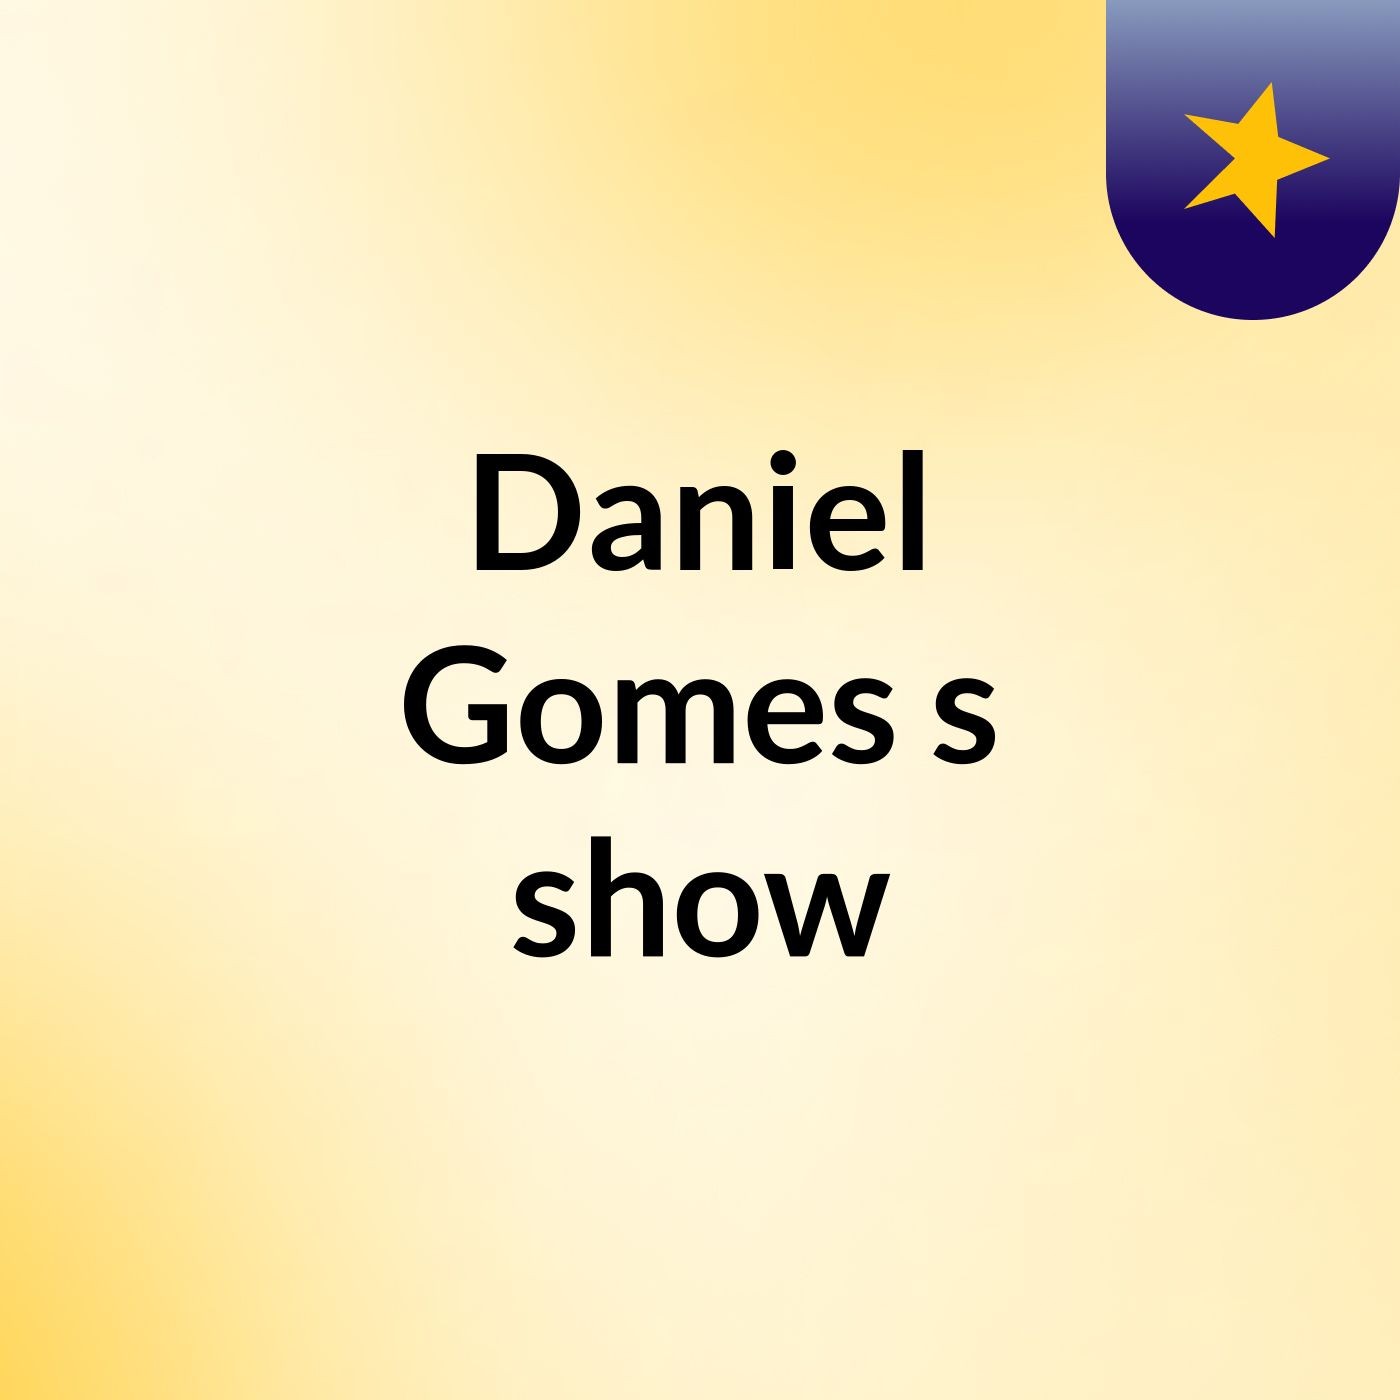 Daniel Gomes's show